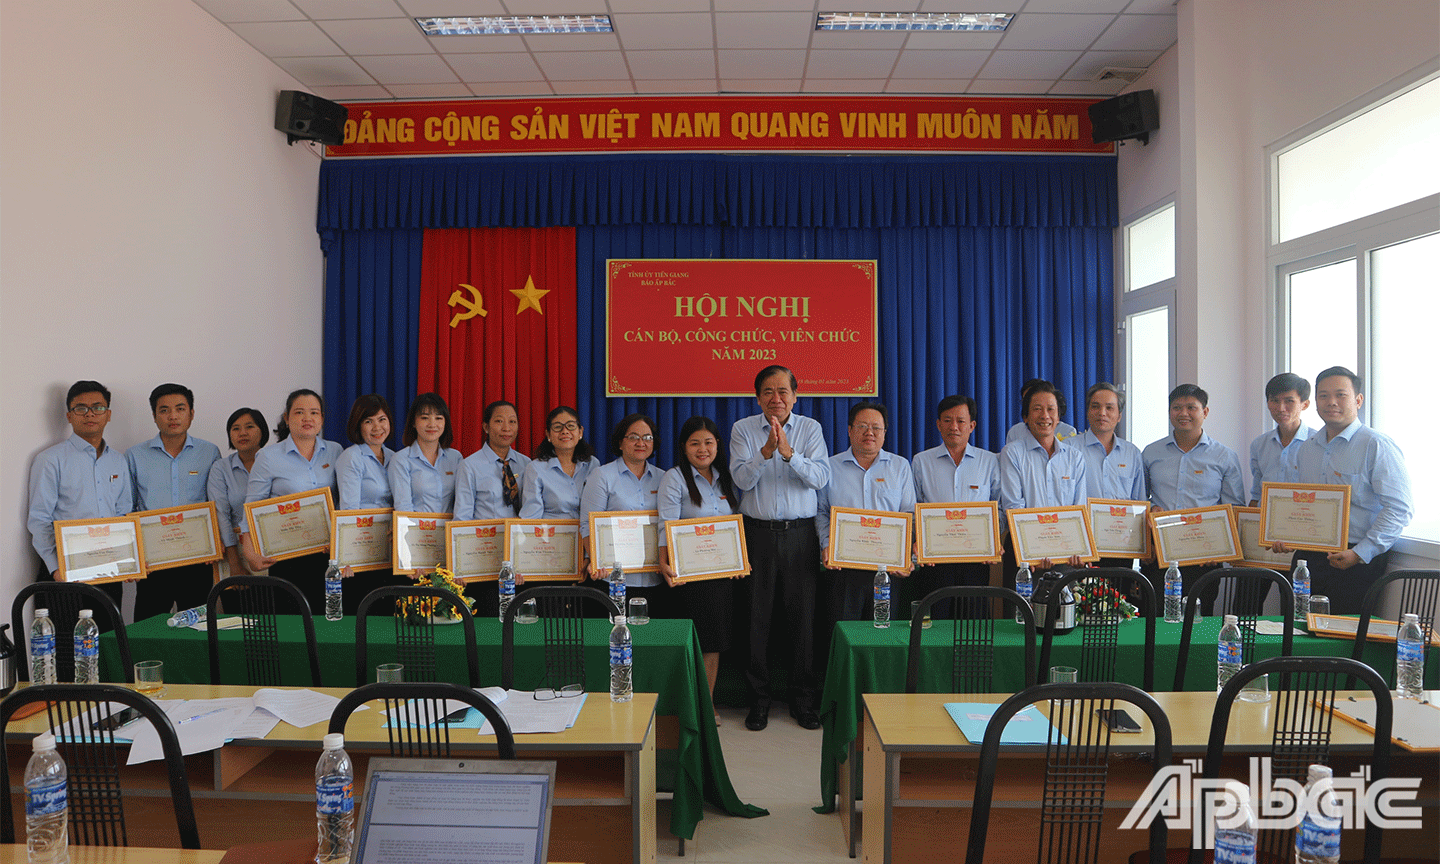 Đồng chí Nguyễn Minh Tân, Tổng Biên tập Báo Ấp Bắc trao Giấy khen cho các cá nhân đạt danh hiệu 